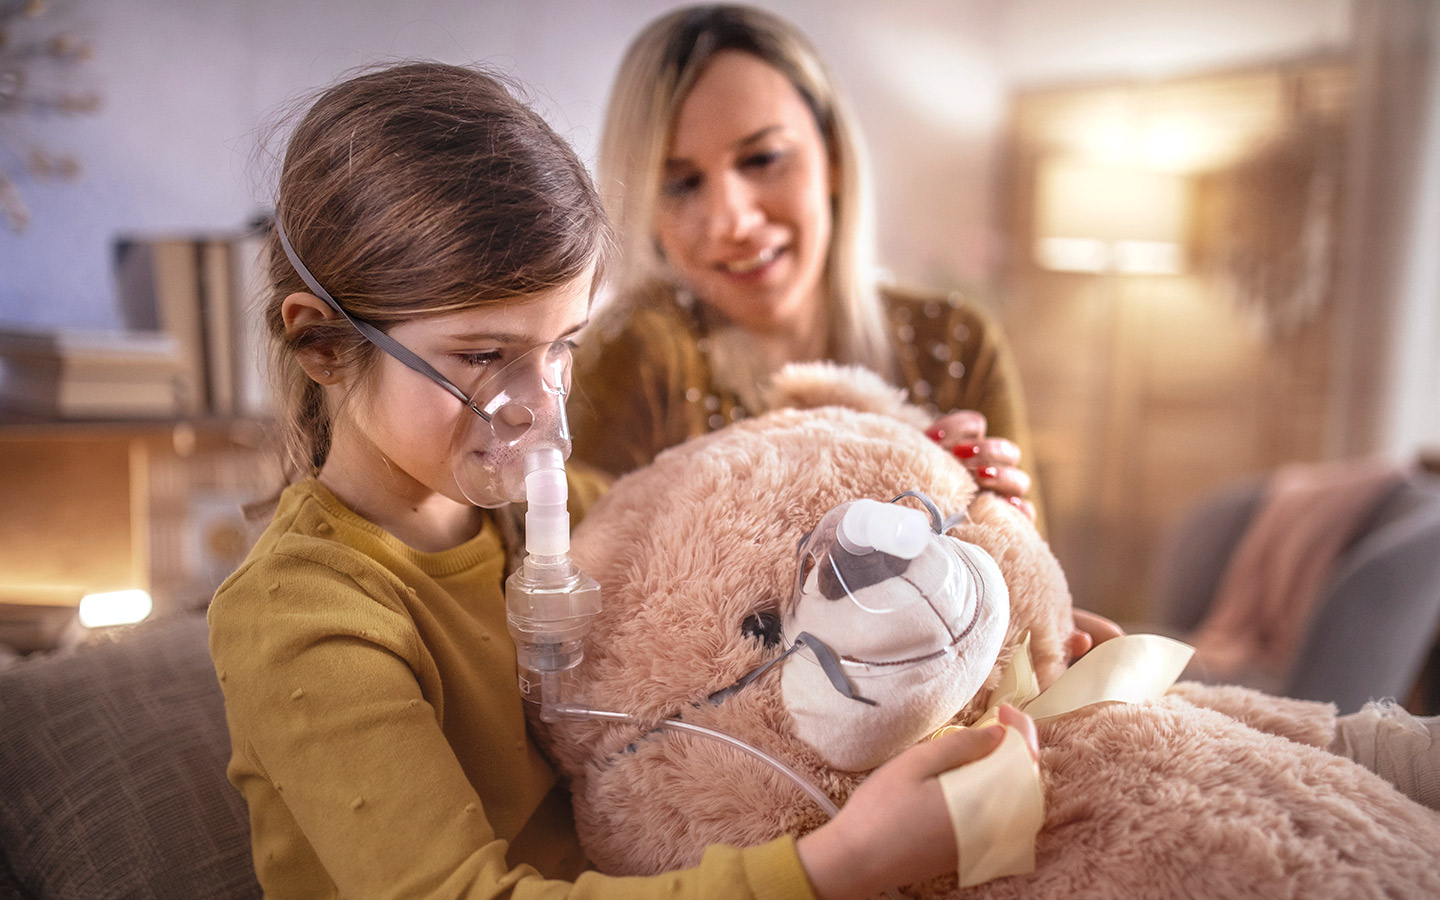 Foto: Kind mit Sauerstoff-Maske hält Teddy mit Sauerstoff-Maske im Arm. Daneben sitzt die Mutter. 